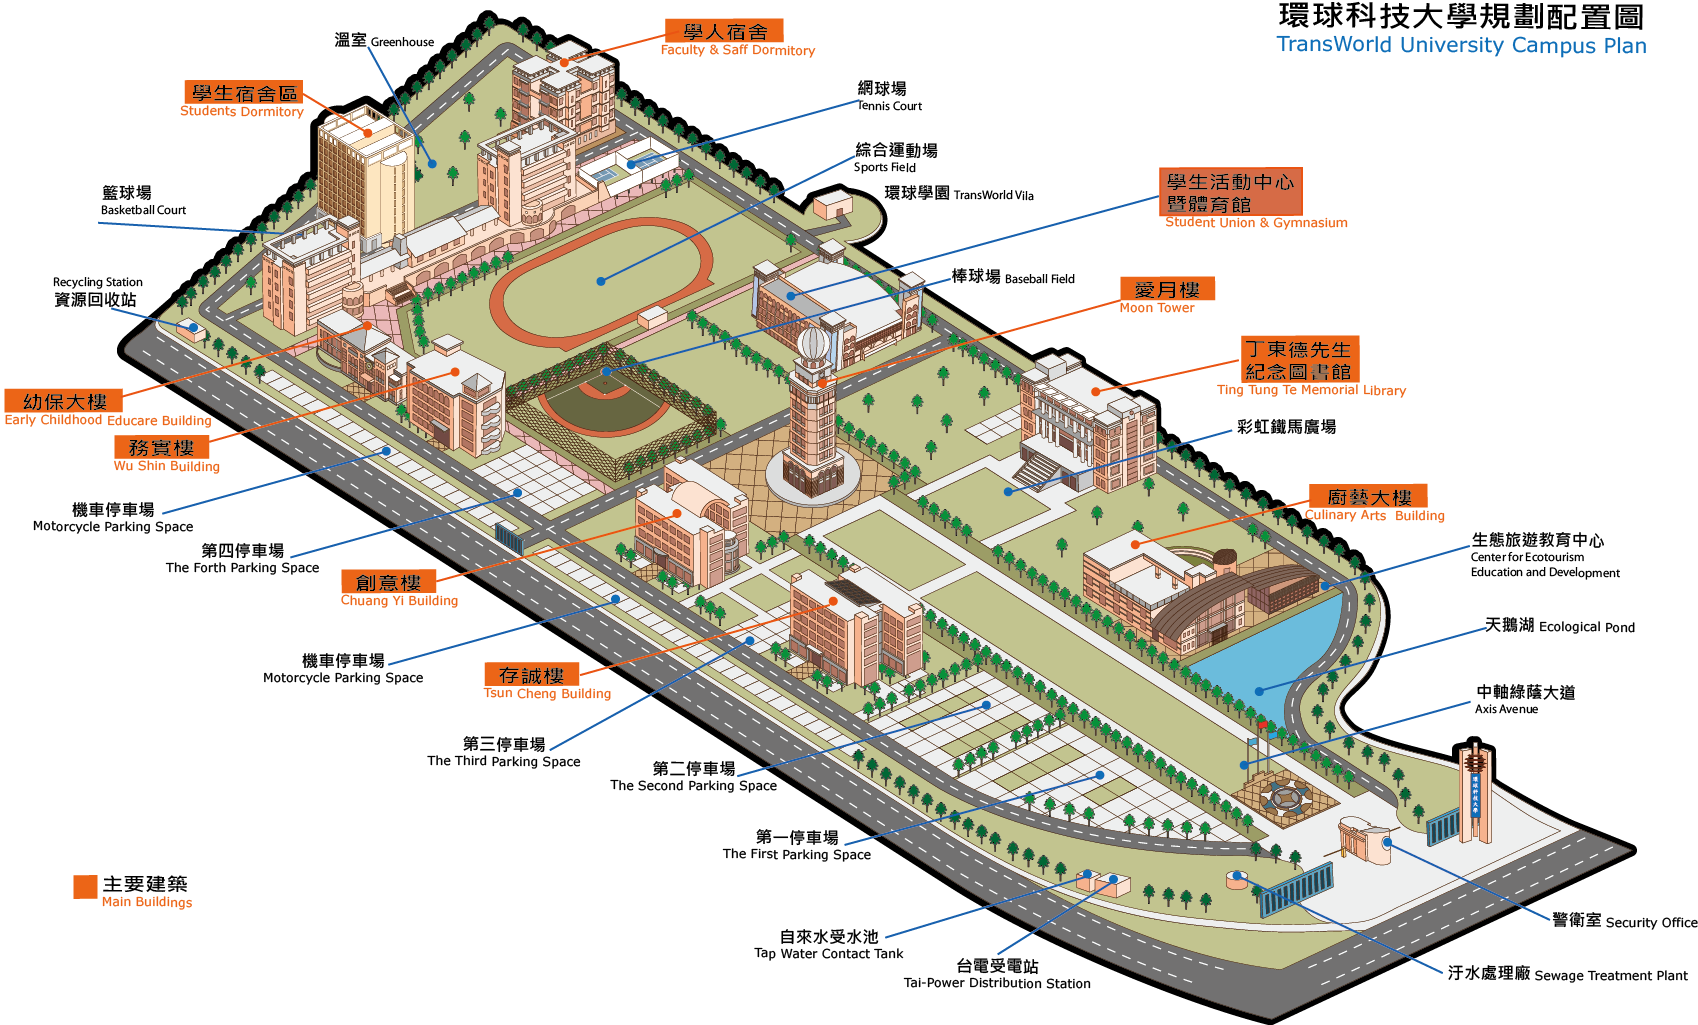 Campus Plan Map